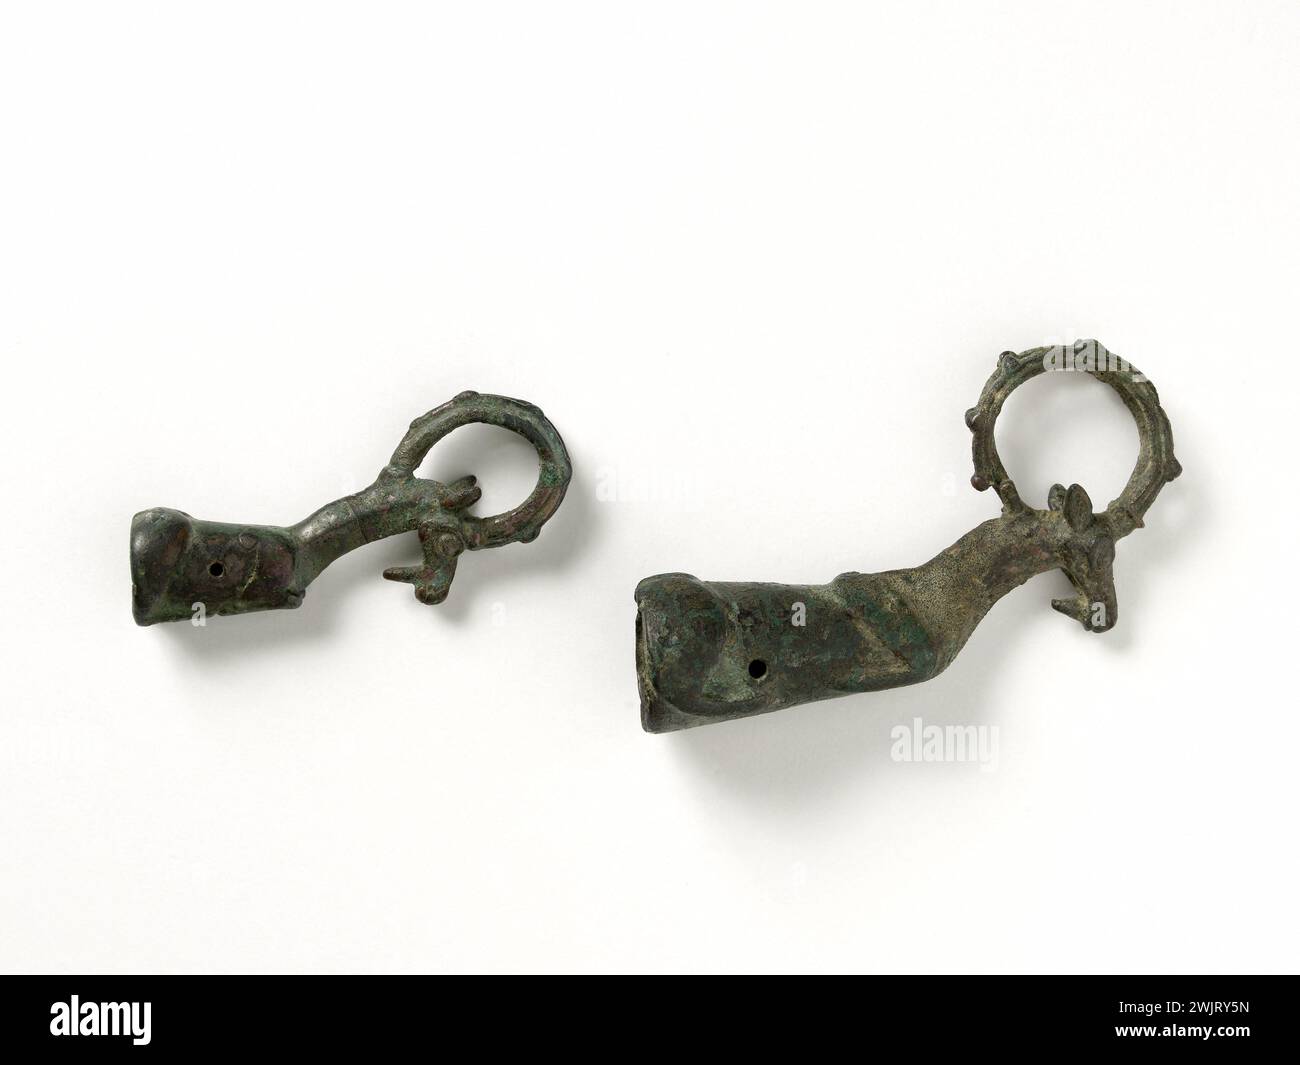 Manches de Pierres to Aiguiser. Lurctan. 900-750 av. J.-C. Par musée musée malée. 35407-2 Iron age, bronze, handle, sharpening stone Stock Photo